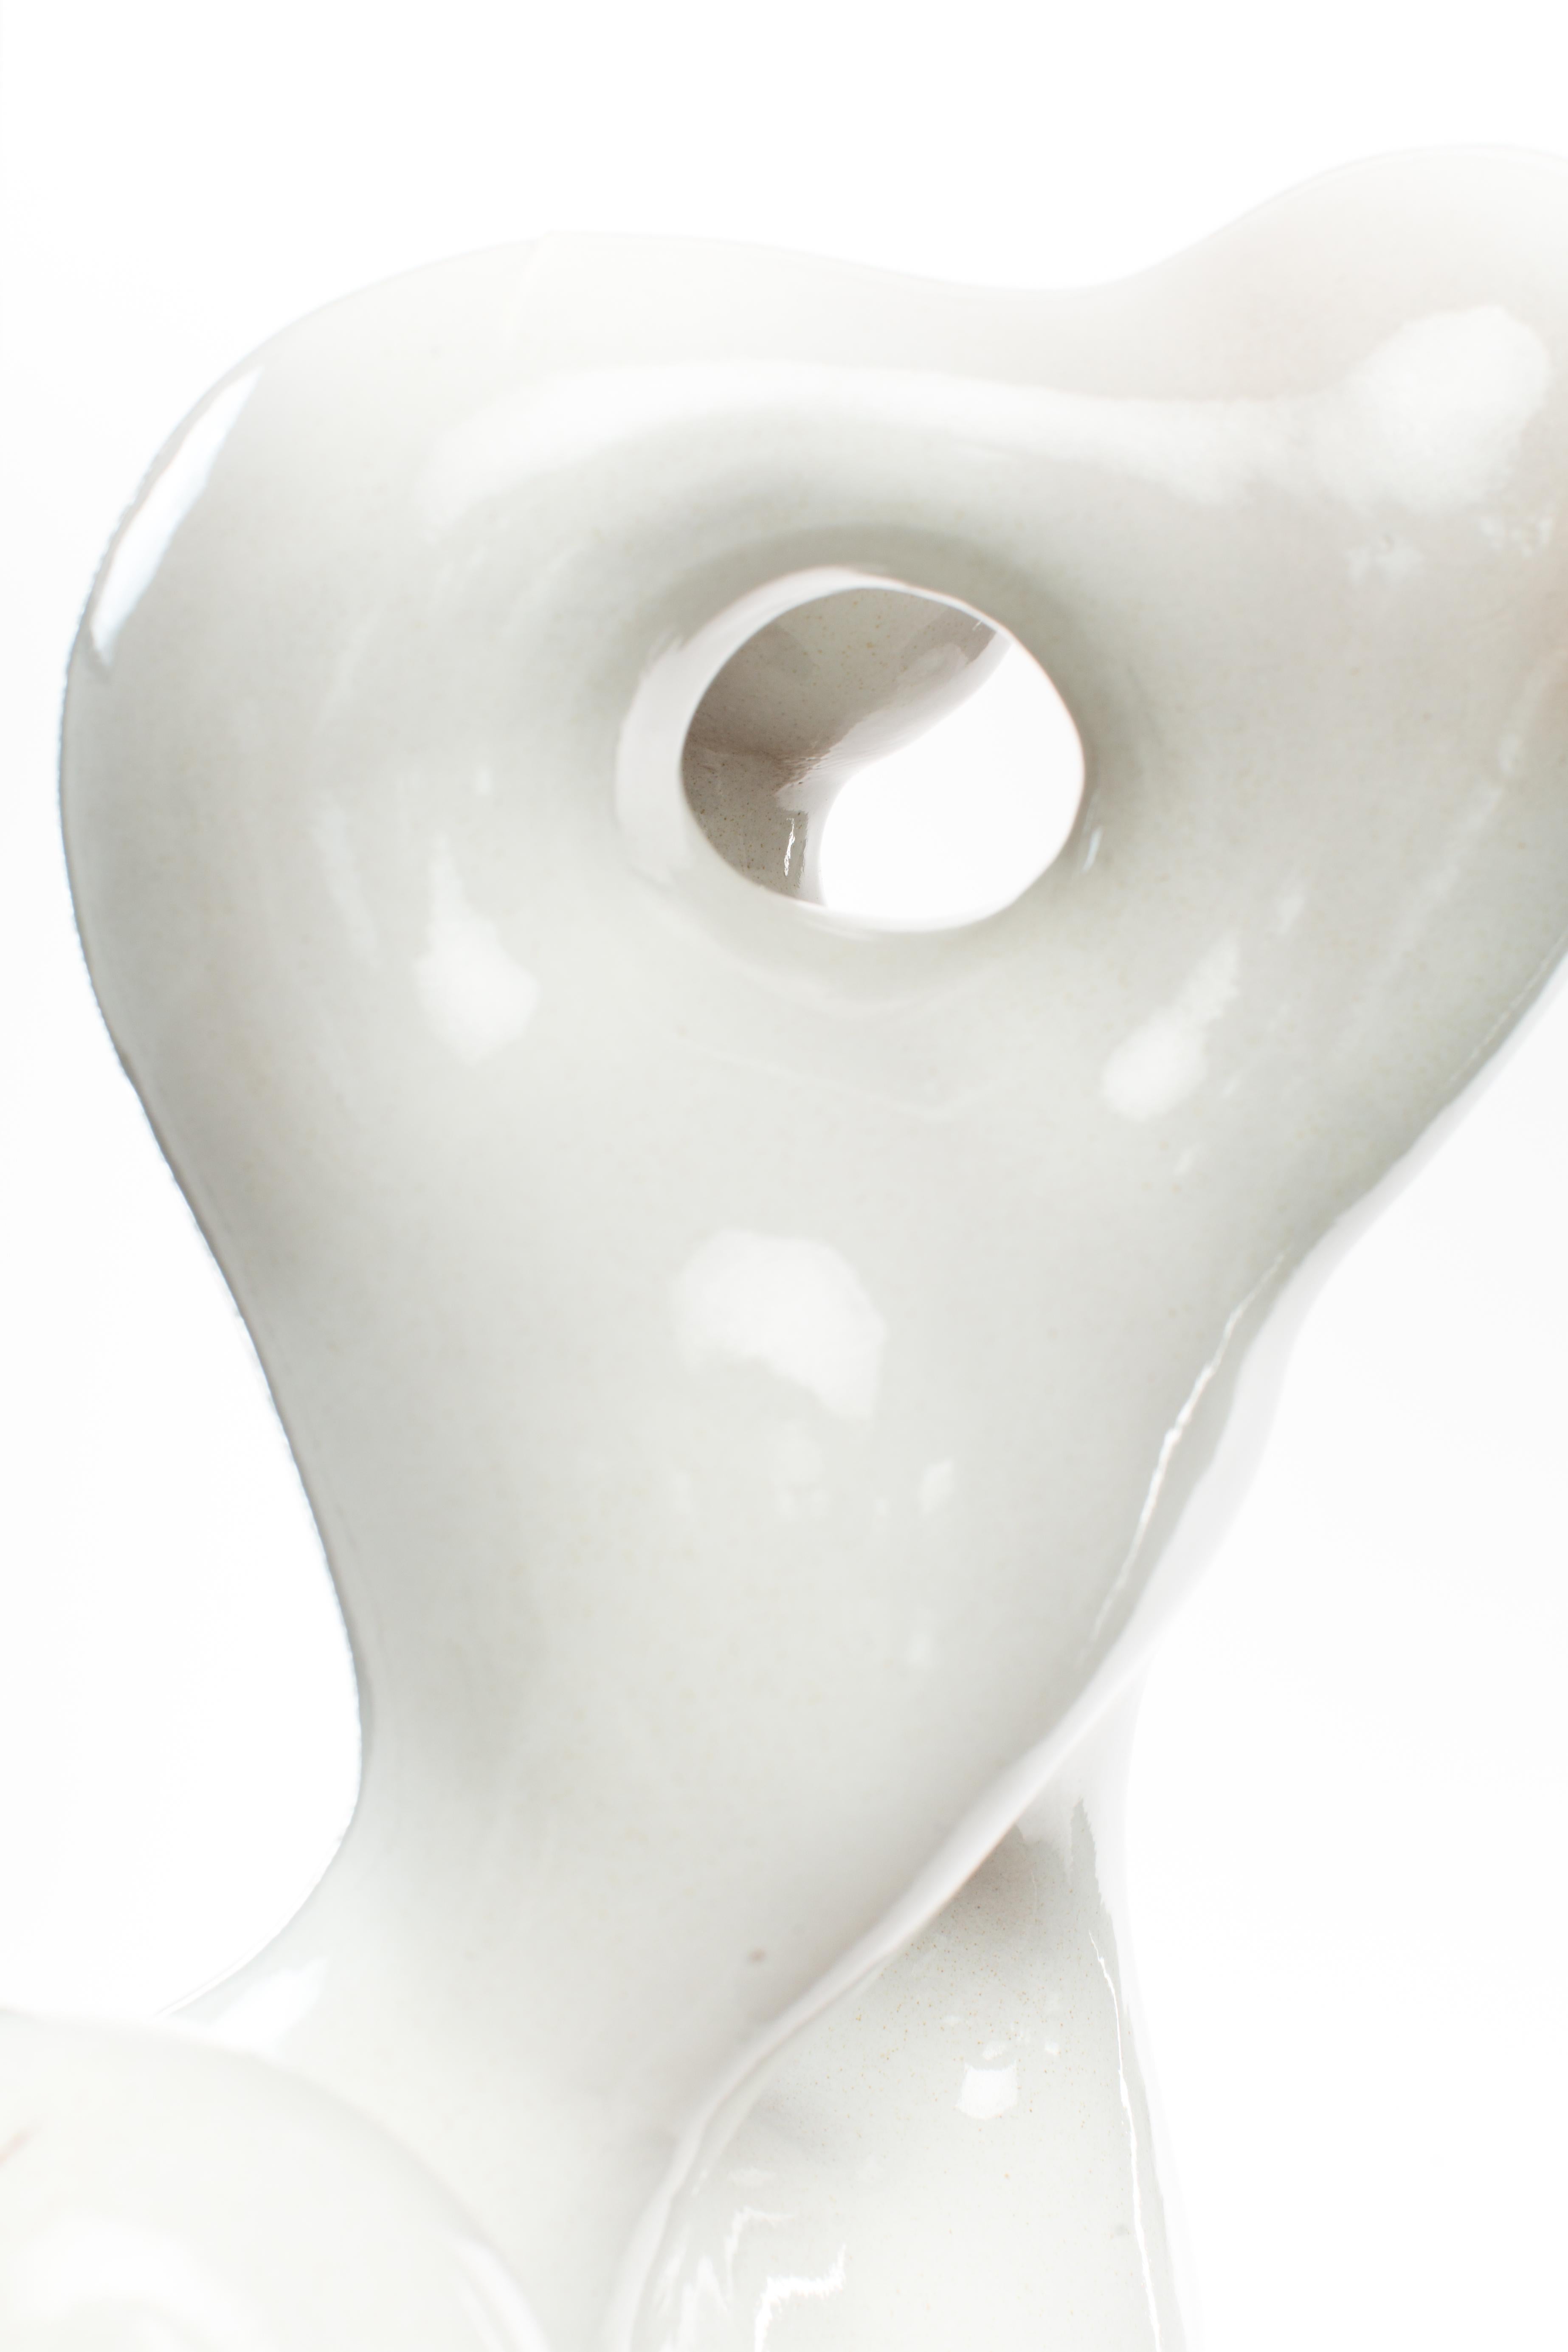 whiteners for ceramic glazes